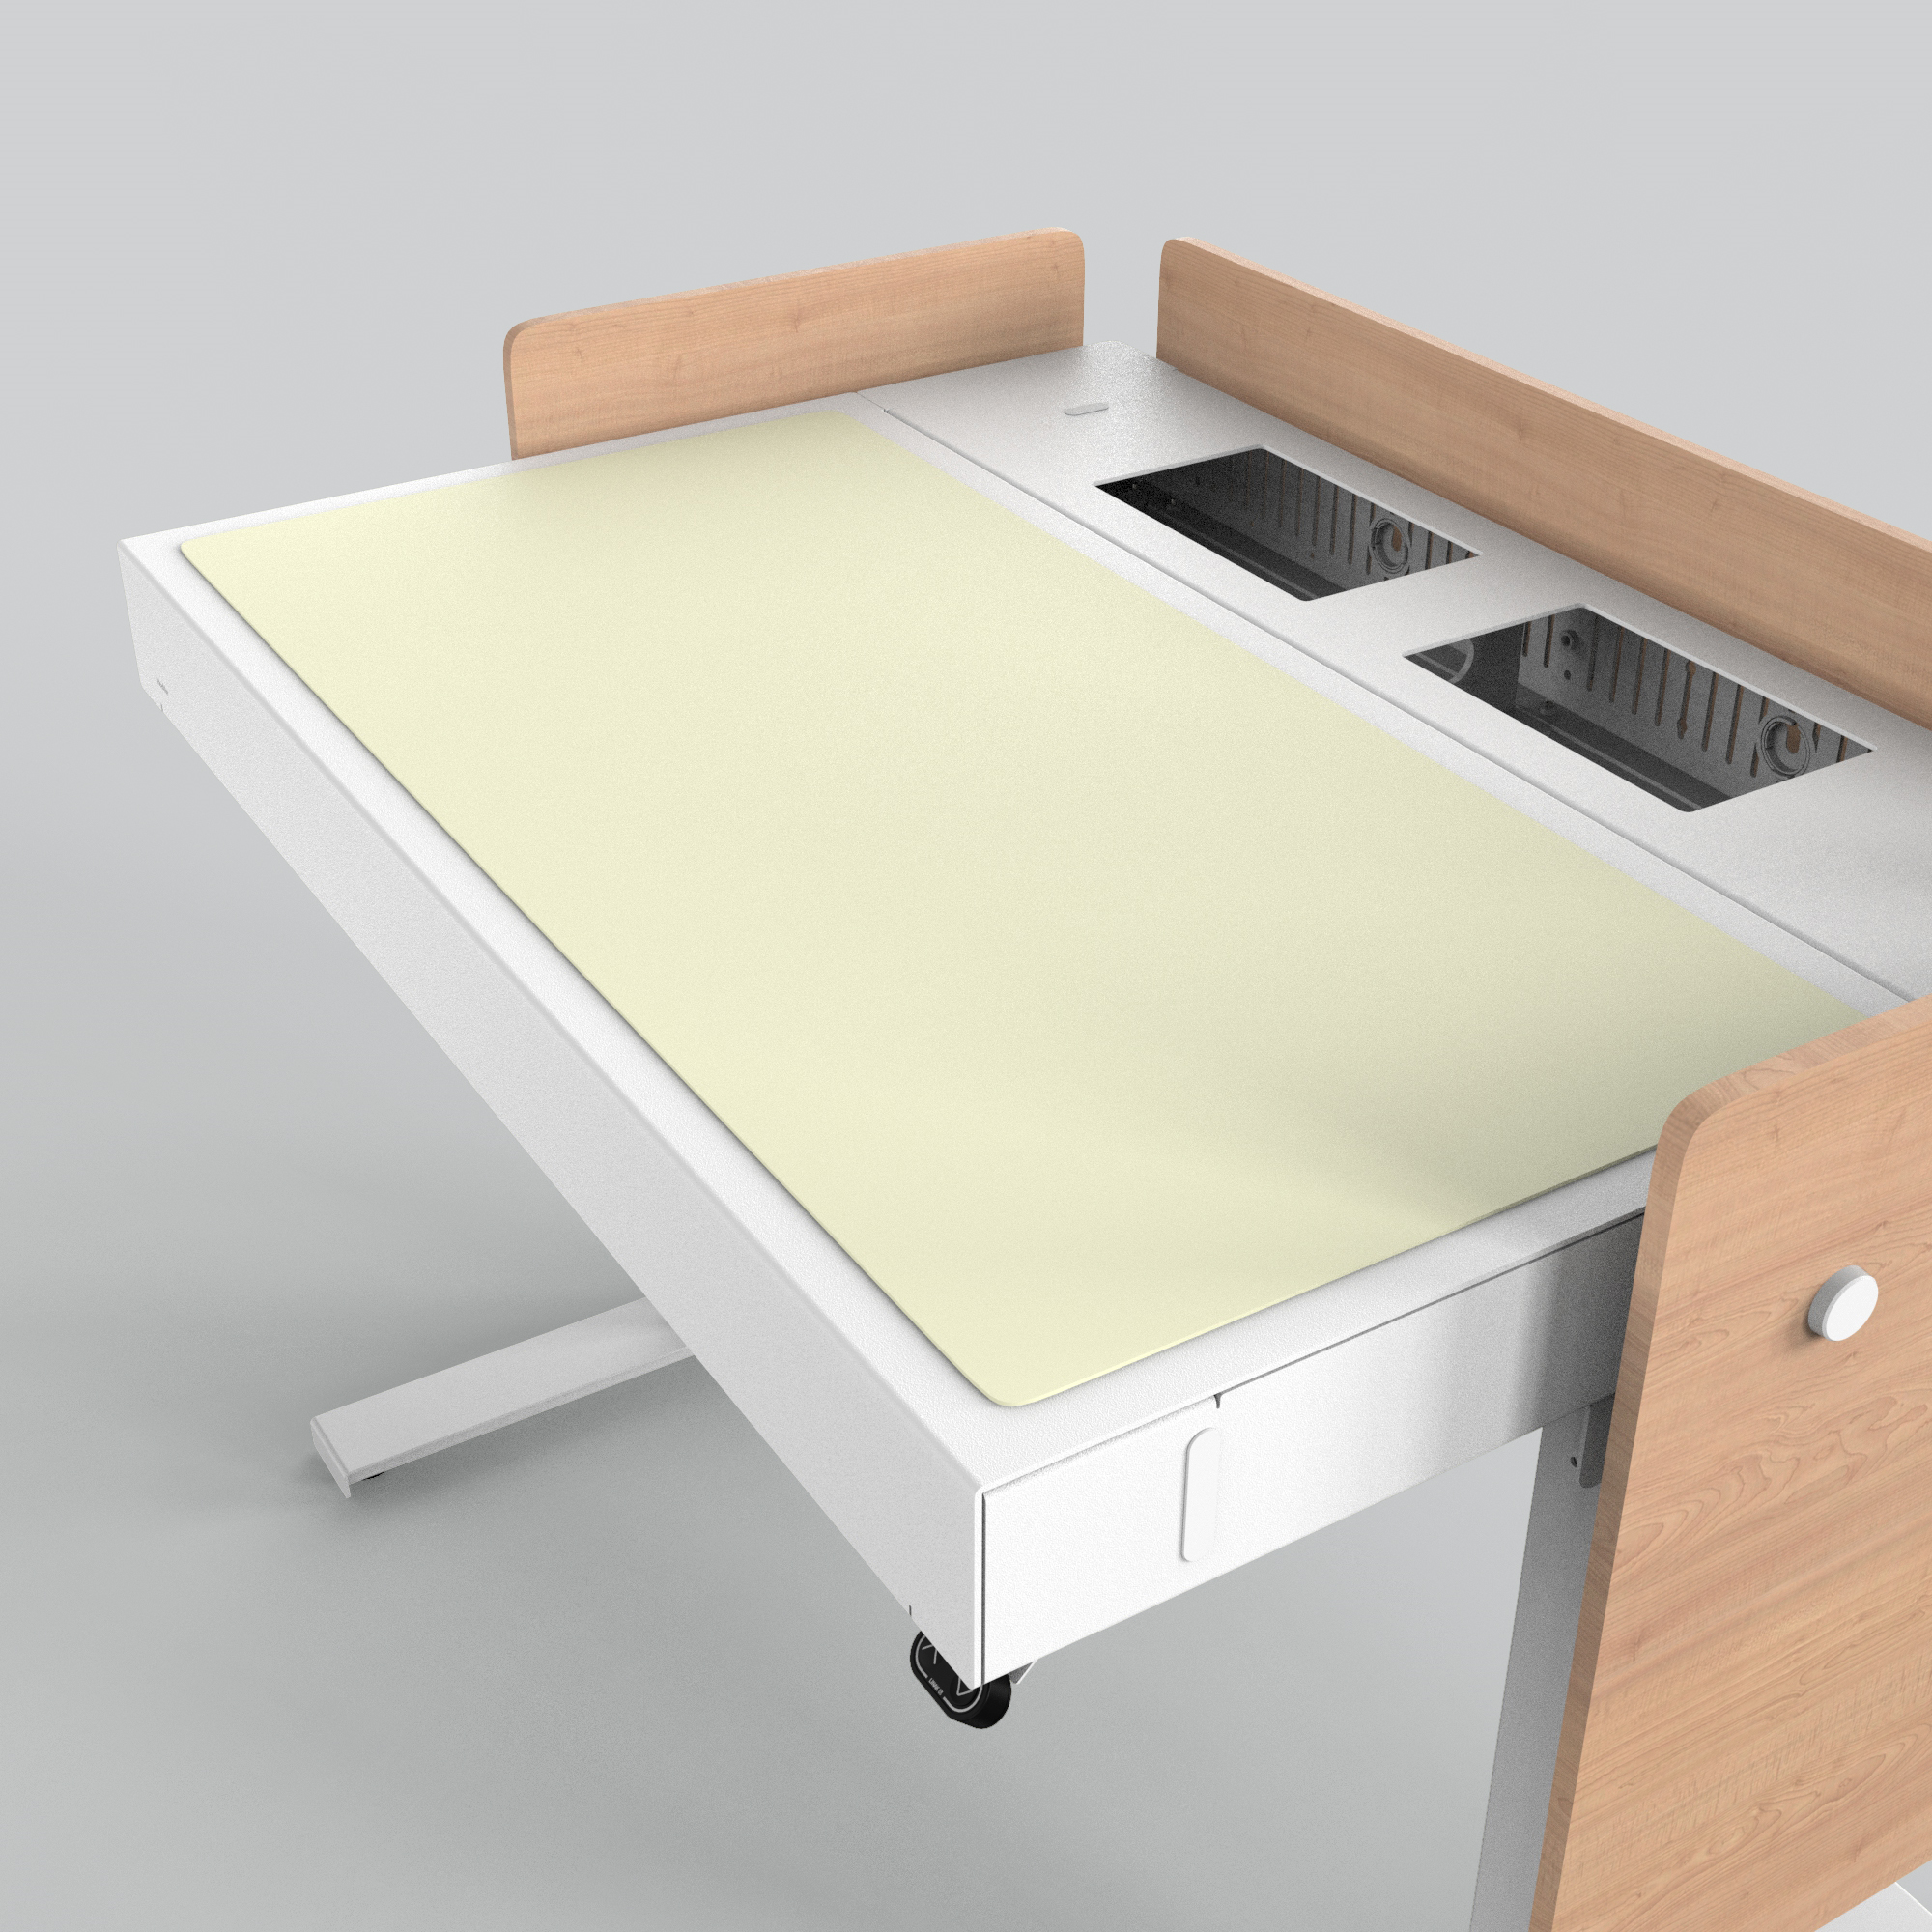 H922-4157 4U Deskpad - Pearl